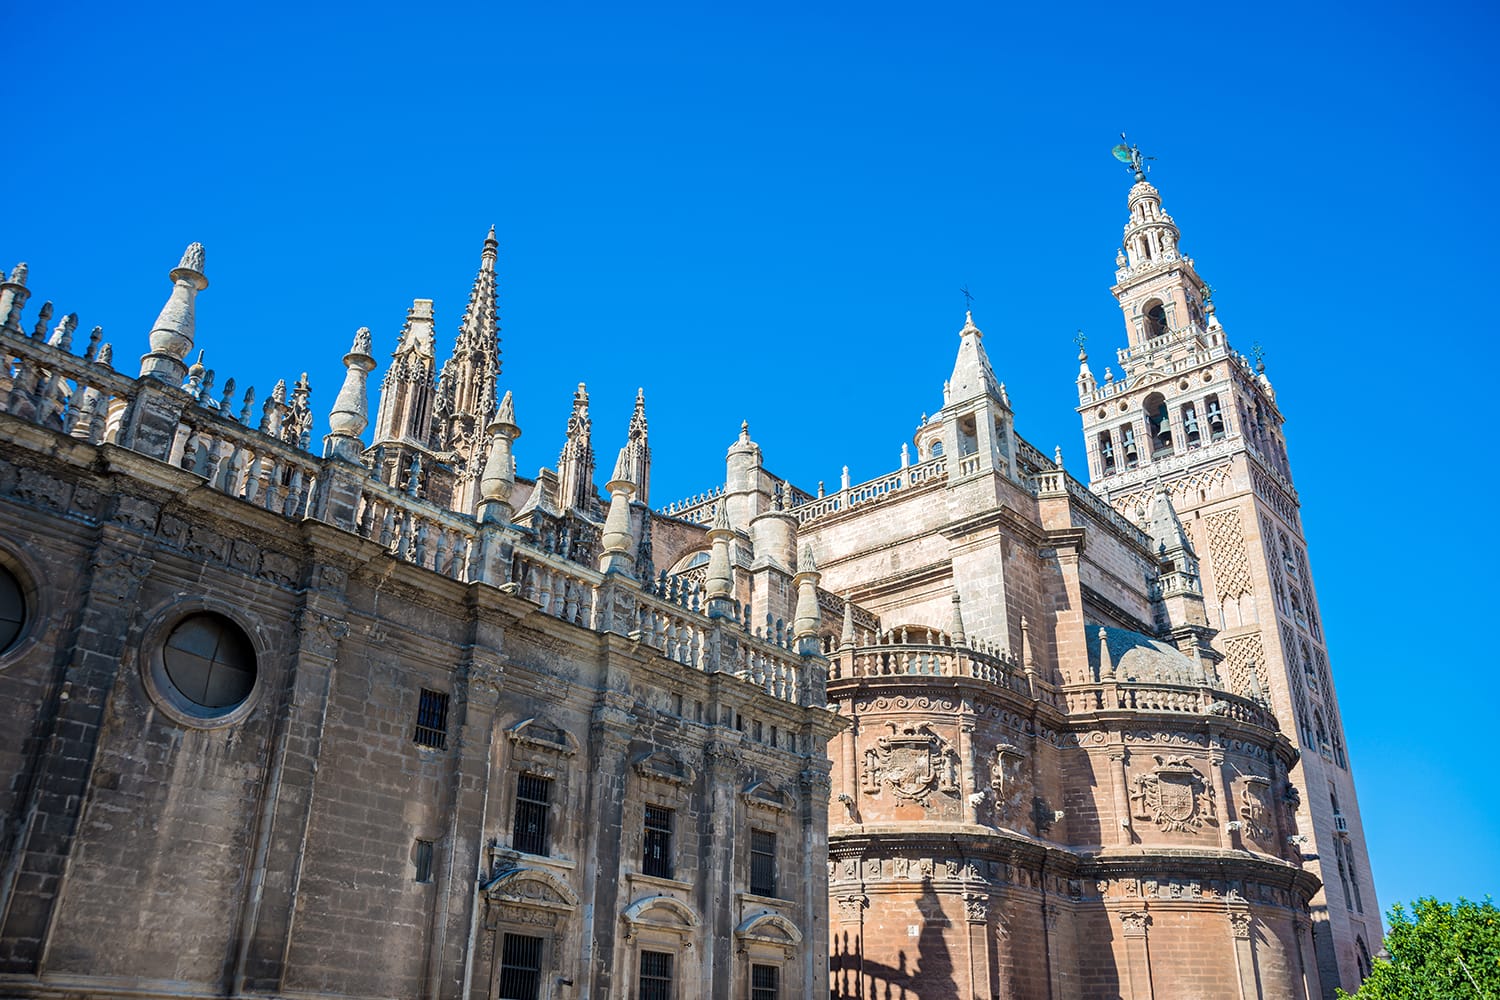 Ο καθεδρικός ναός της Santa Maria de la Sede de Sevilla είναι ο μεγαλύτερος χριστιανικός γοτθικός καθεδρικός ναός στον κόσμο. Η Unesco το ανακήρυξε το 1987 Μνημείο Παγκόσμιας Κληρονομιάς.